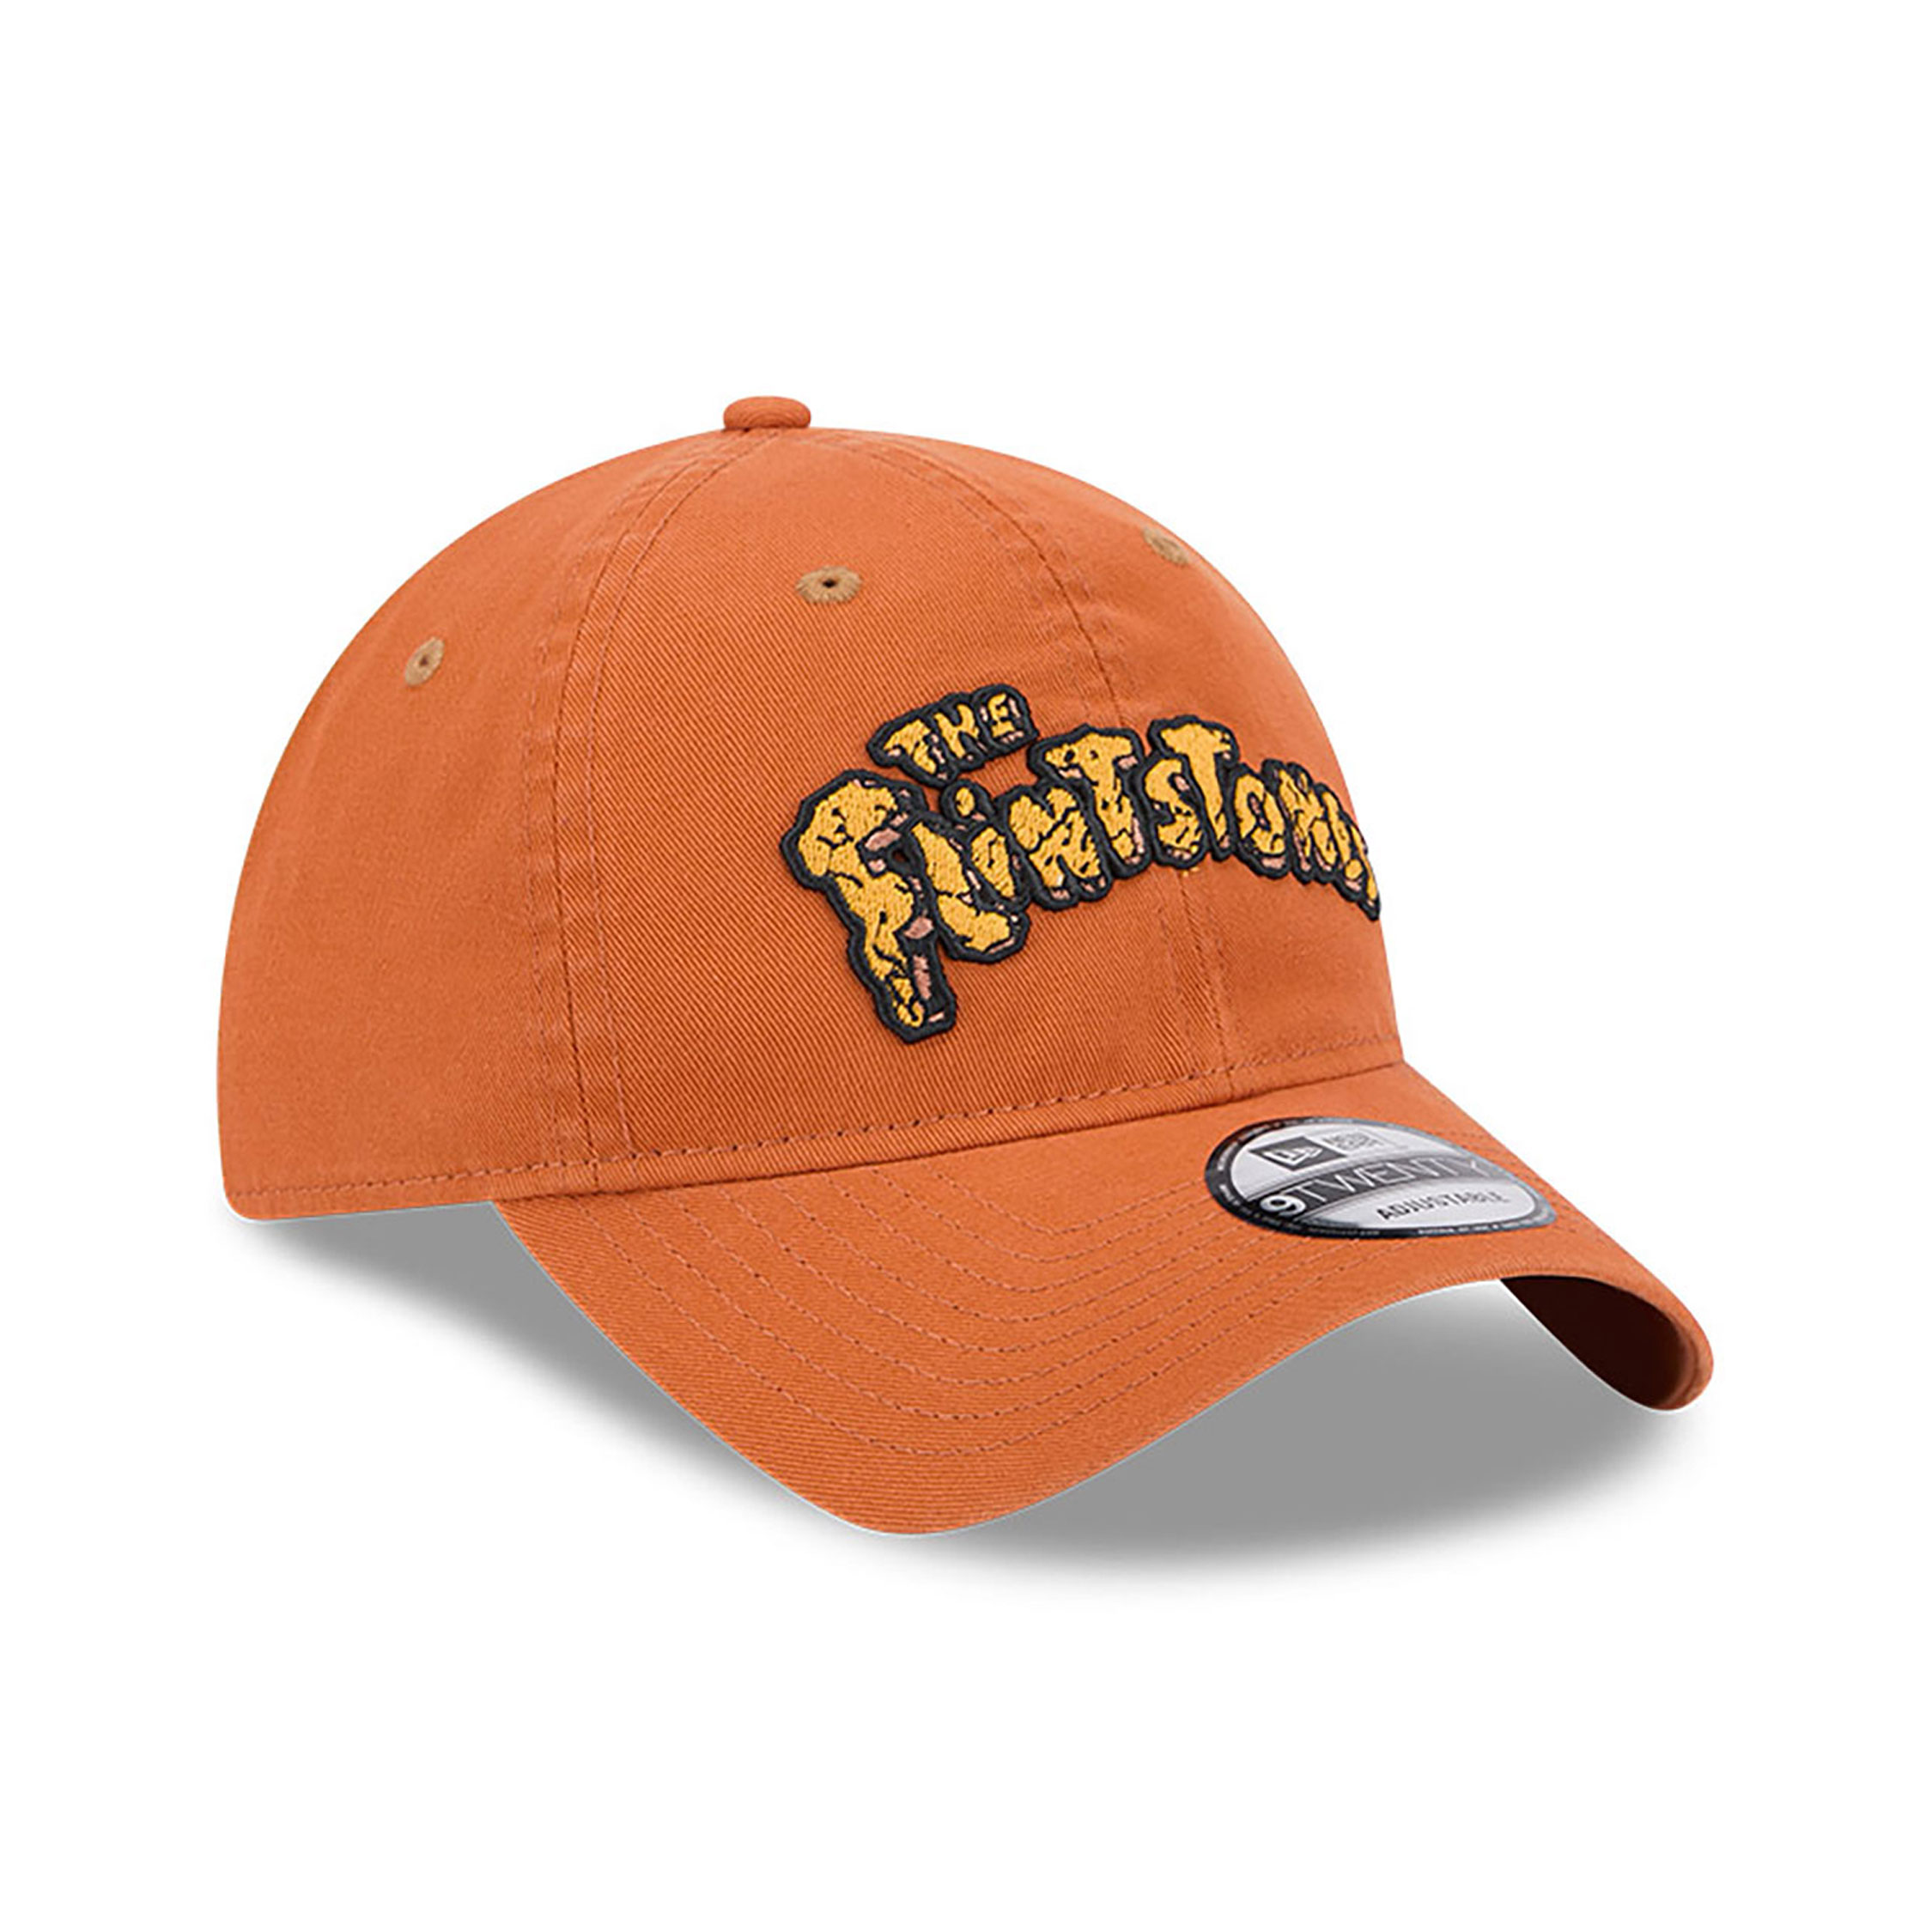 The Flintstones Brown 9TWENTY Adjustable Cap